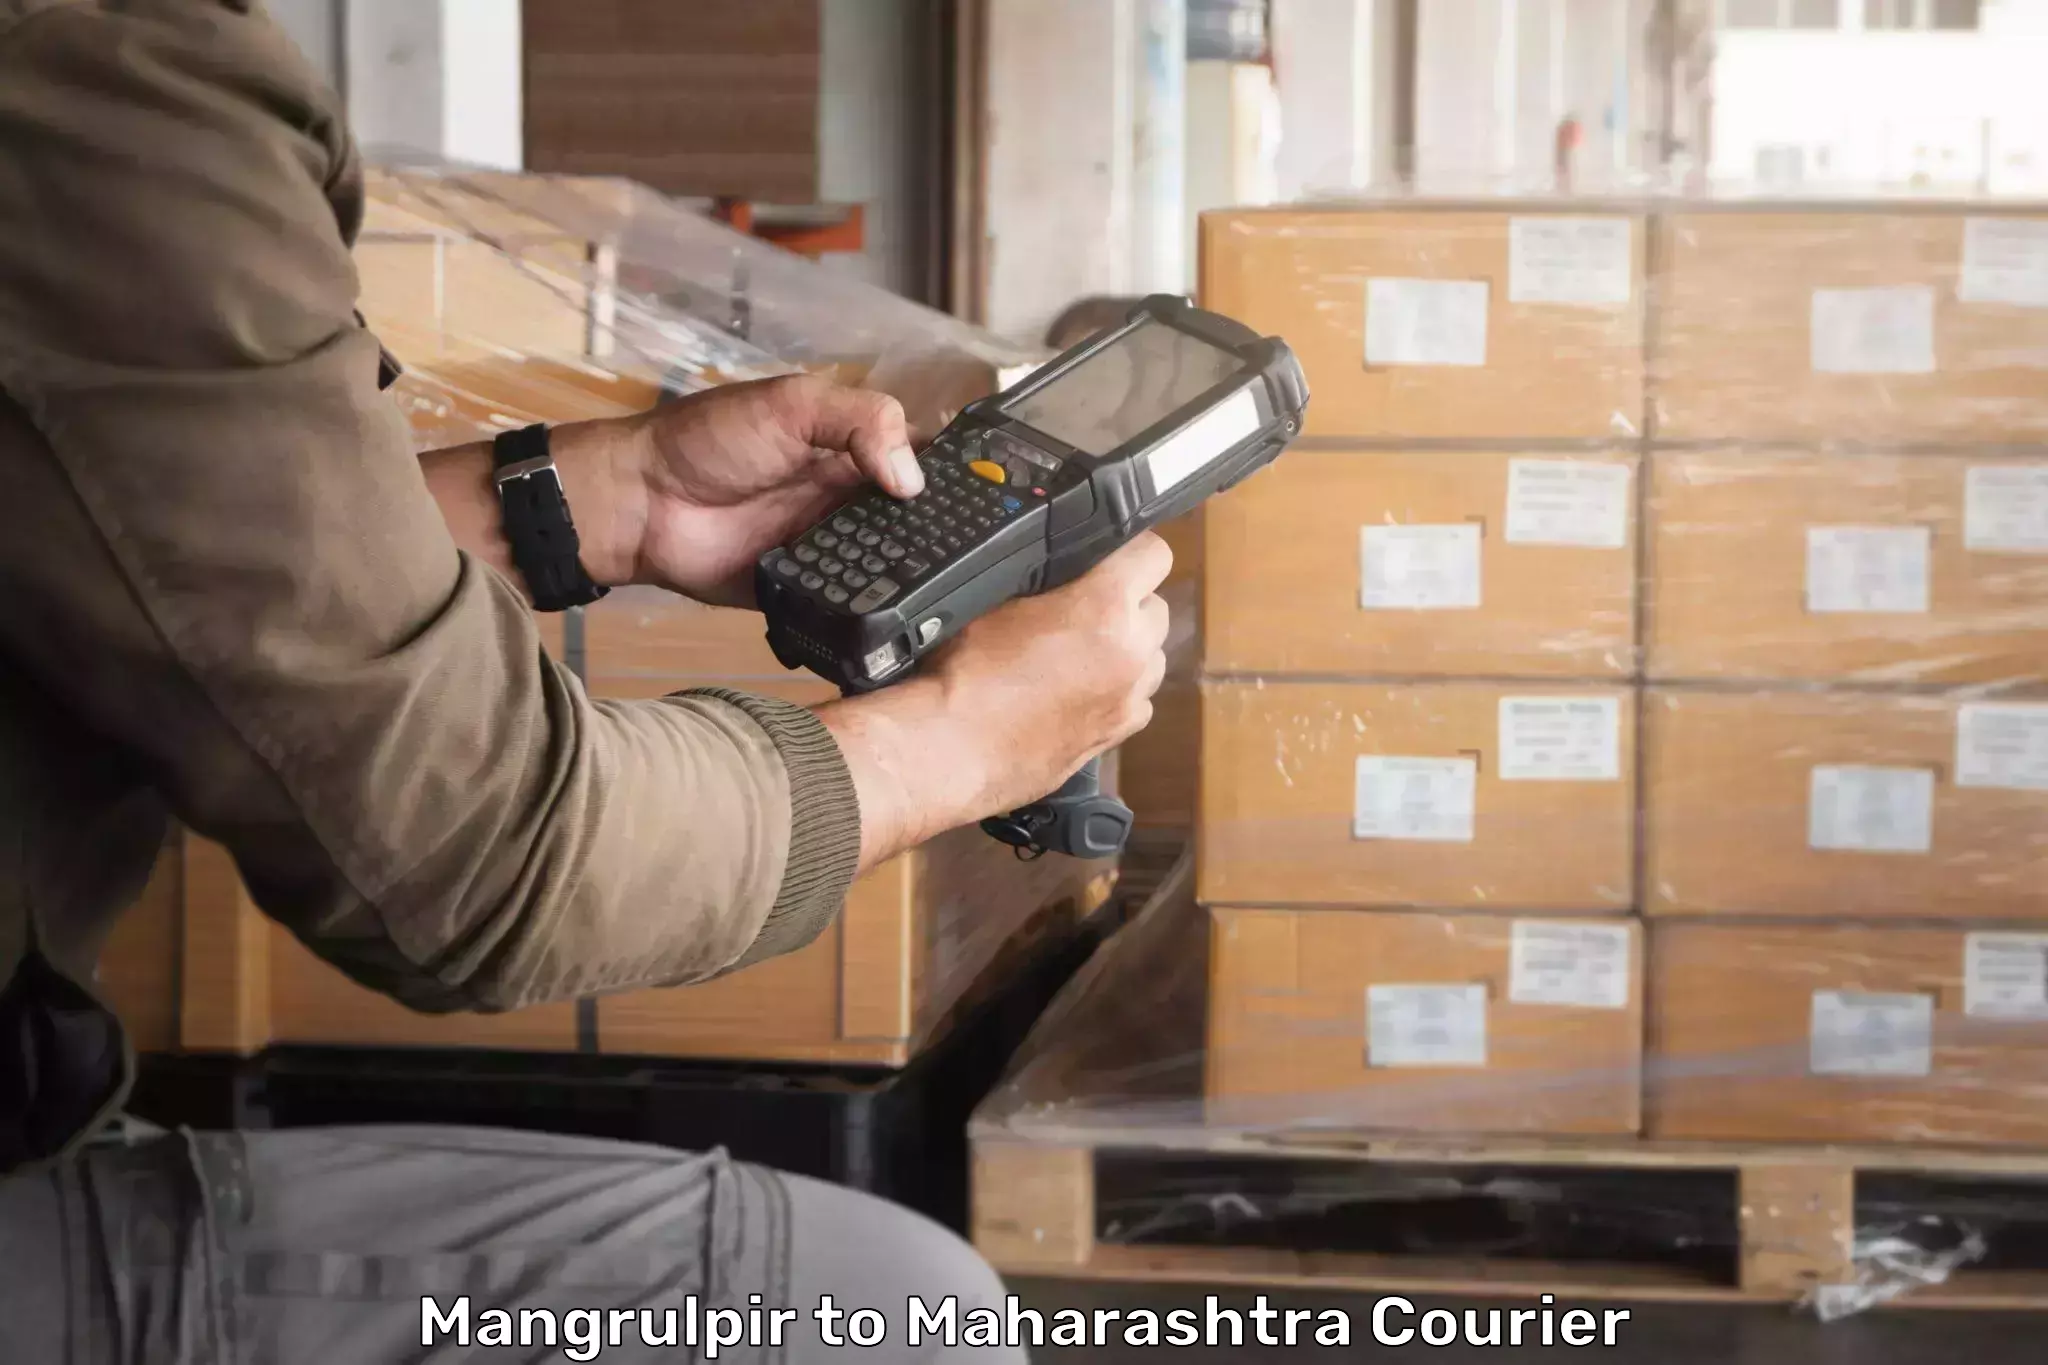 Seamless shipping experience Mangrulpir to Jalna